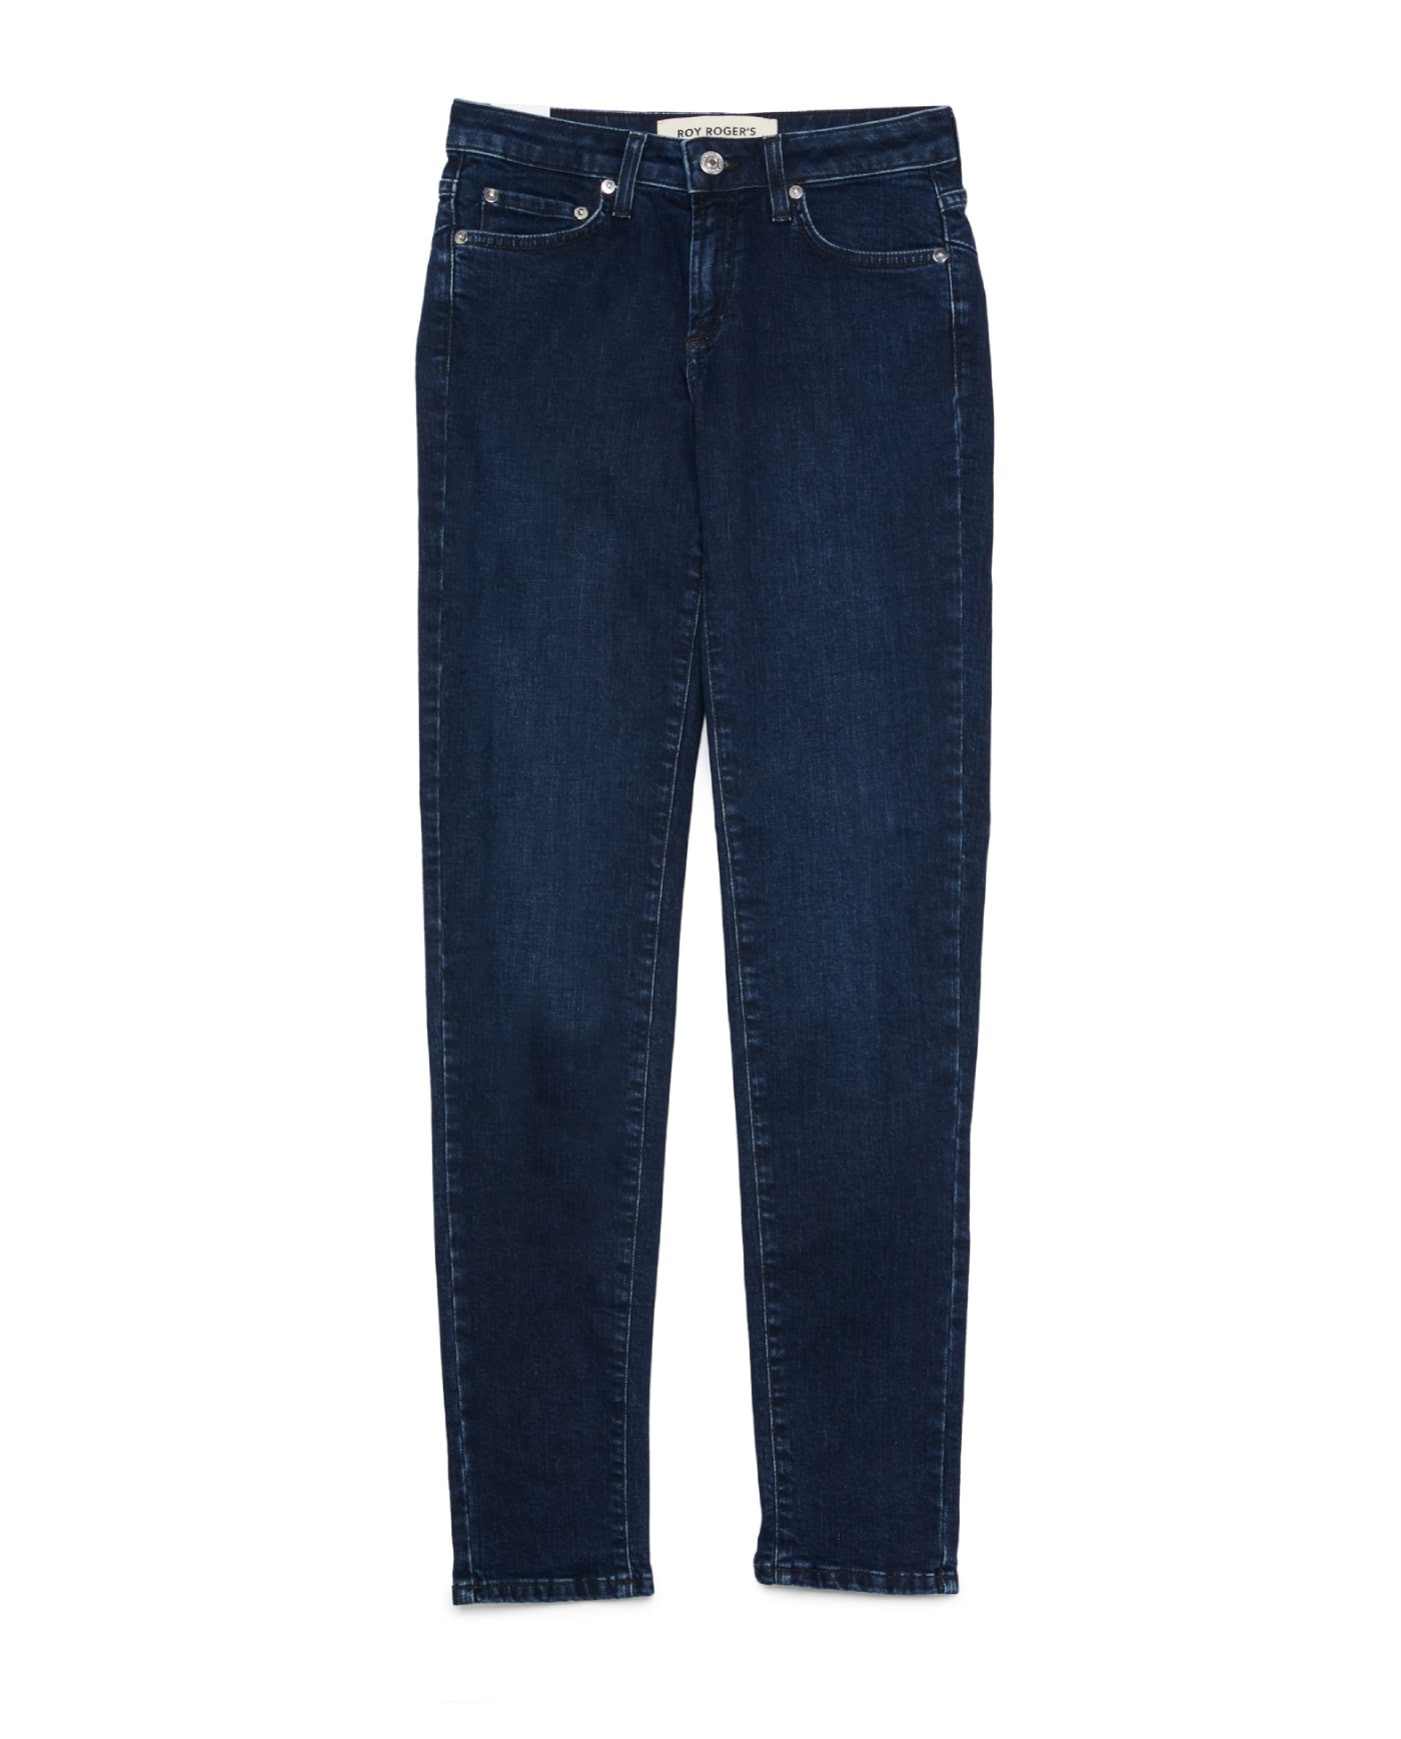 Freddy SUPER - Jeggings - jeans scuro cuciture in tono/royal blue -  Zalando.de